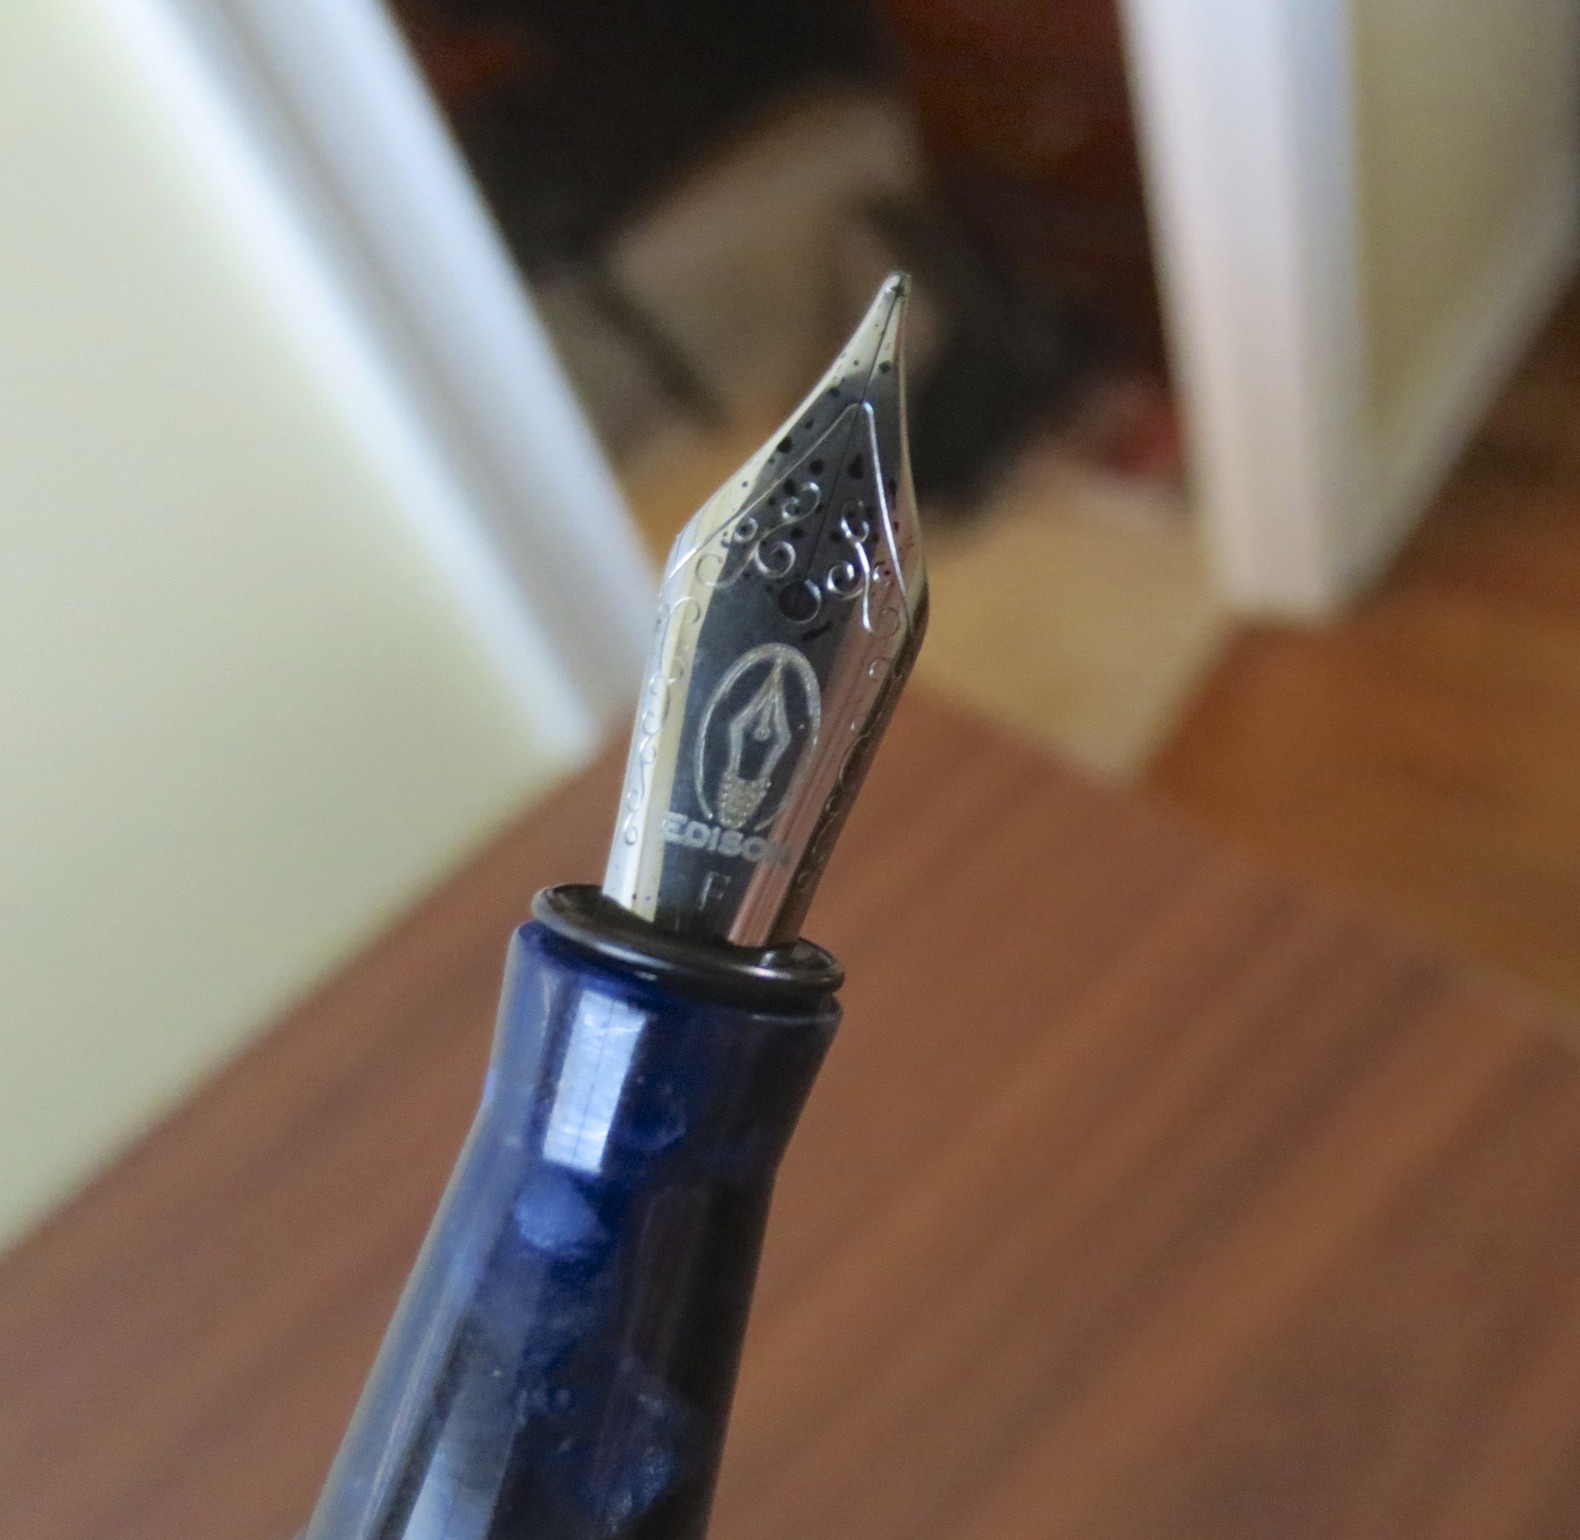 Edison Pearlette Fountain Pen in Quantum NEW in box Extra-Fine Point